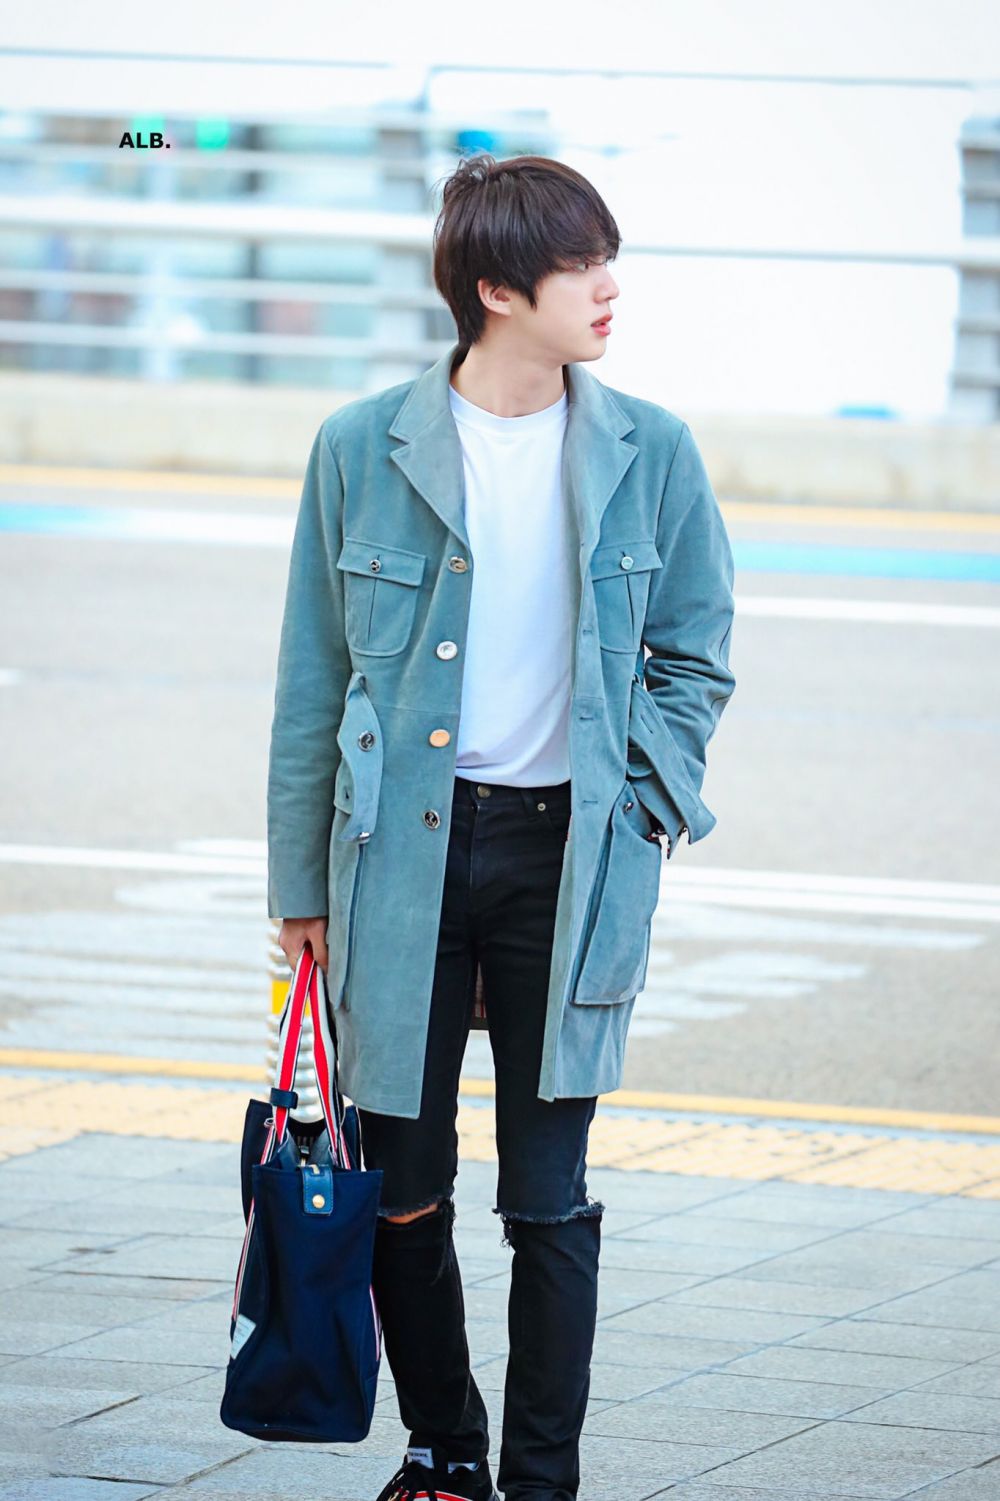 Sederhana namun Mewah, Jin BTS Pakai Mantel Selutut dan Tenteng Tas Rp35  Jutaan di Bandara Incheon - TribunTrends.com